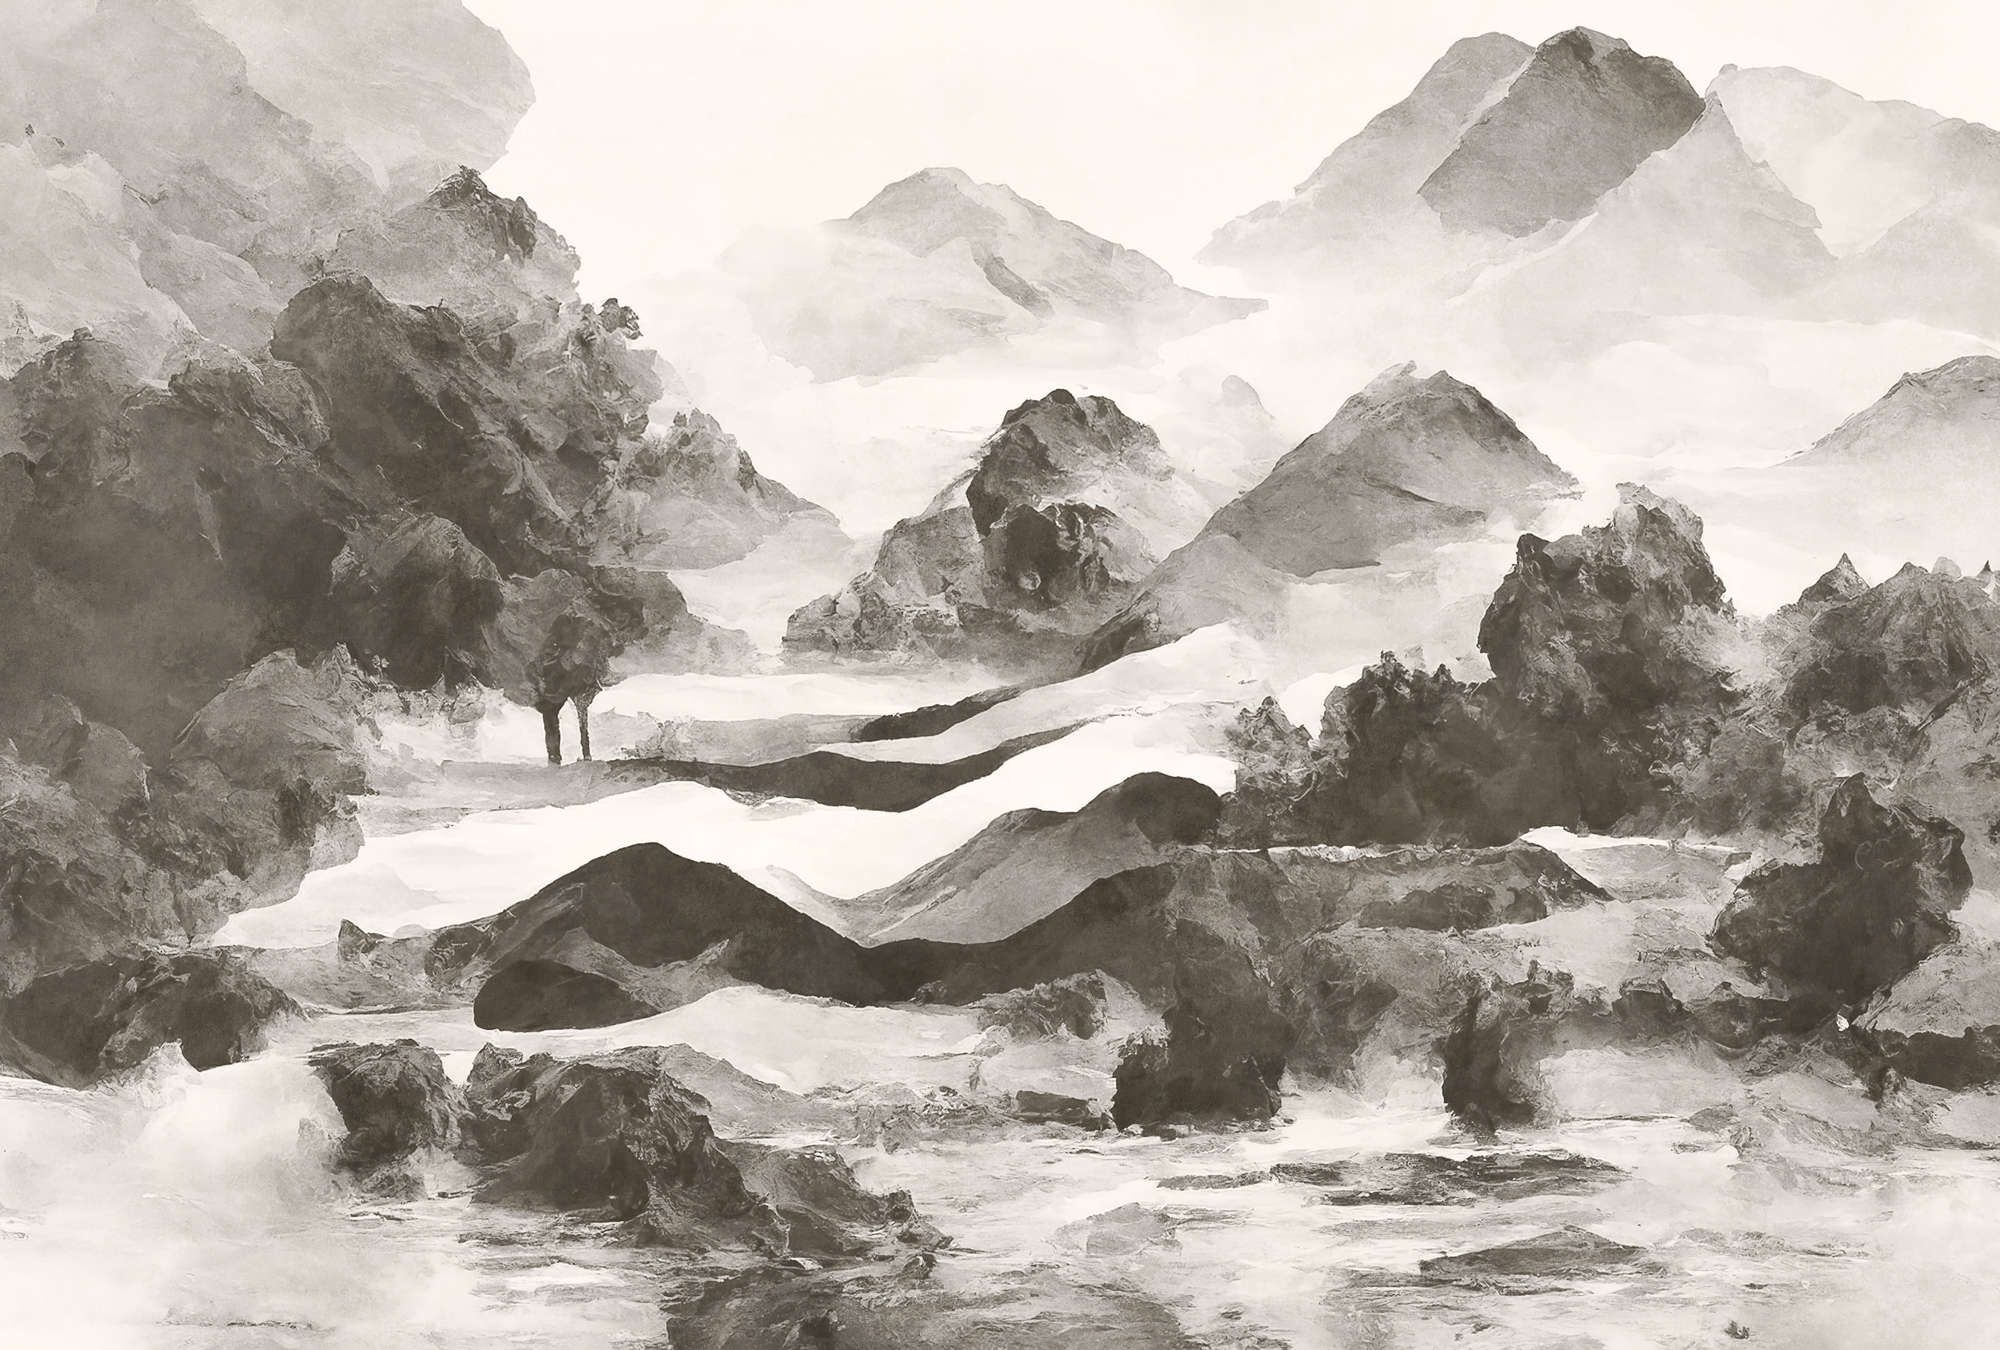             papier peint en papier panoramique »tinterra 1« - Paysage avec montagnes & brouillard - Gris | Intissé lisse, légèrement nacré
        